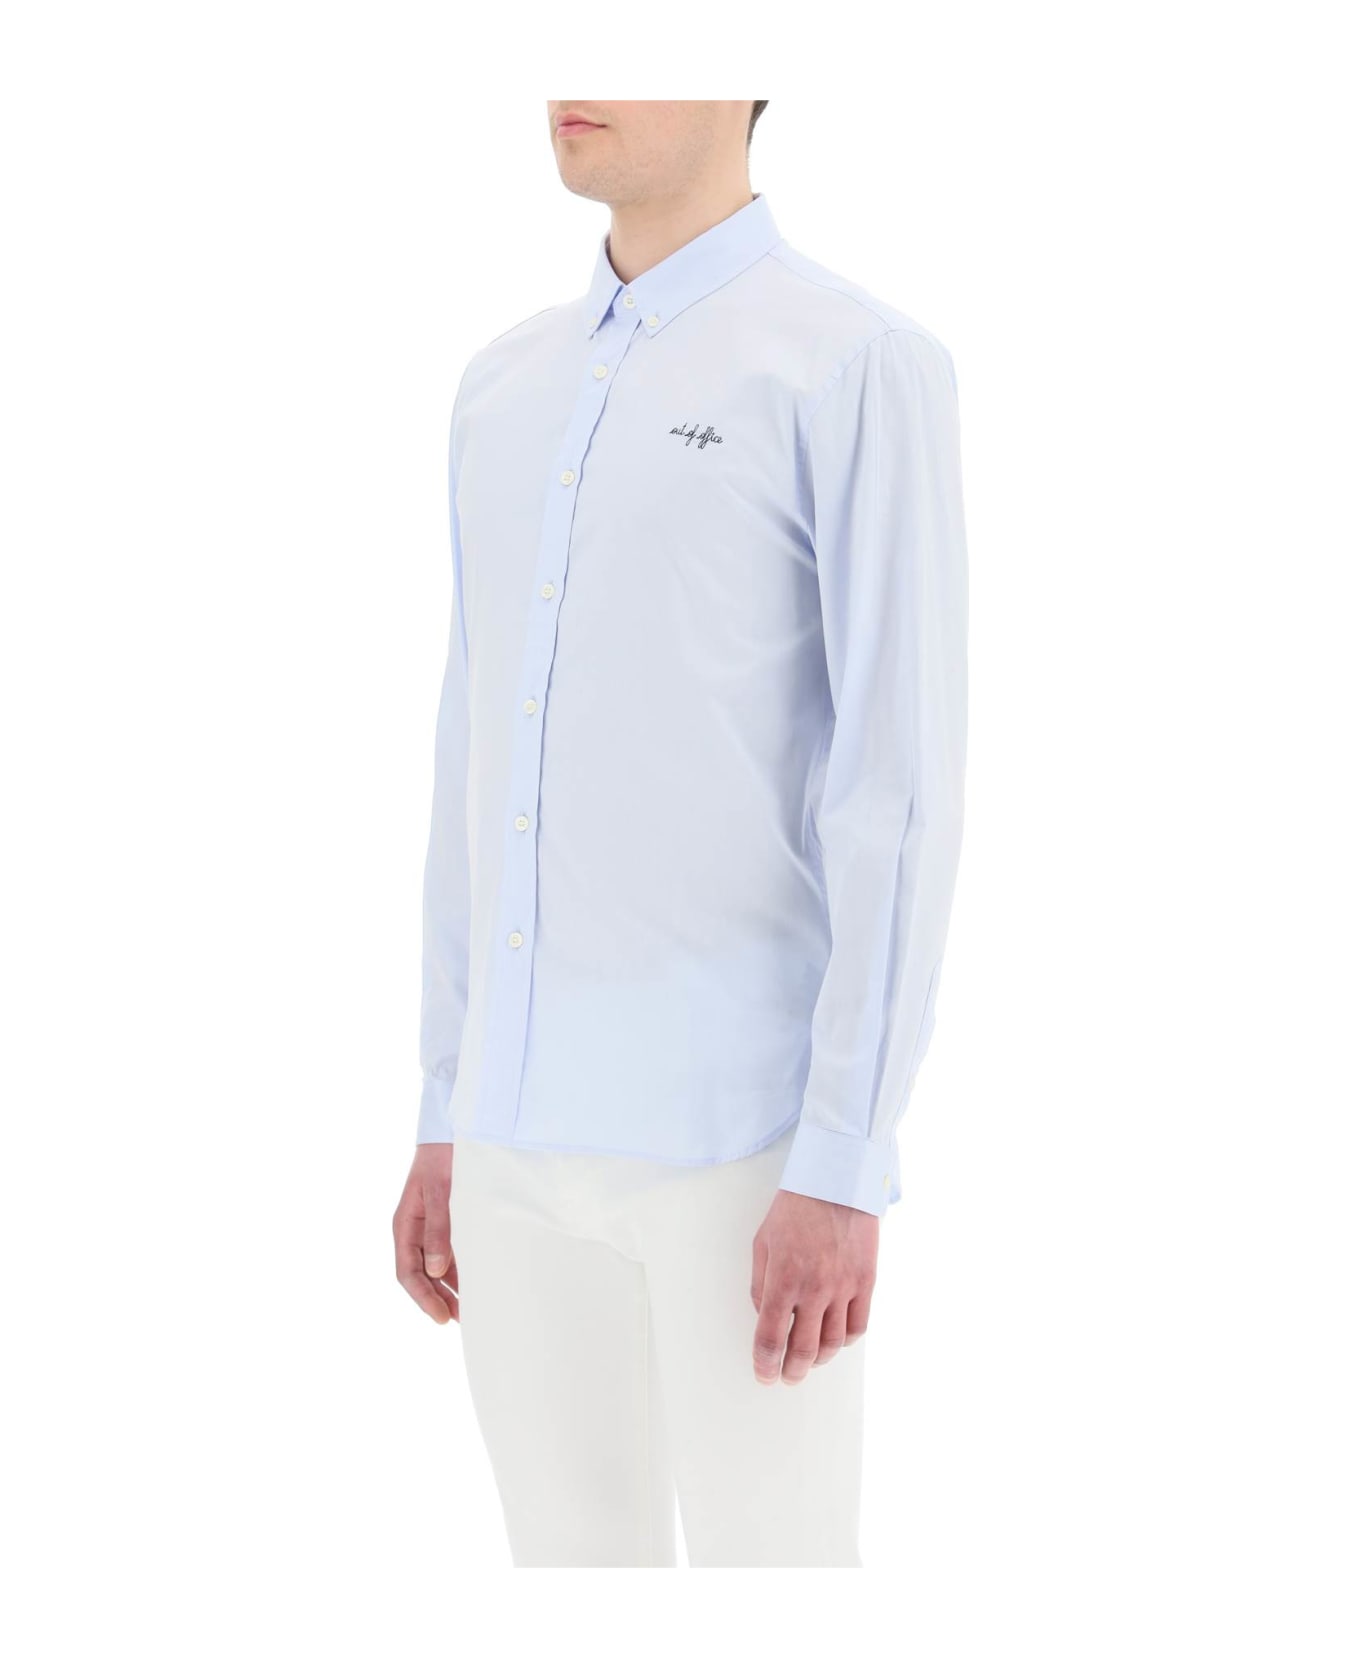 Maison Labiche Embroidered Malerbes Shirt - TWILL SKY BLUE (Light blue)